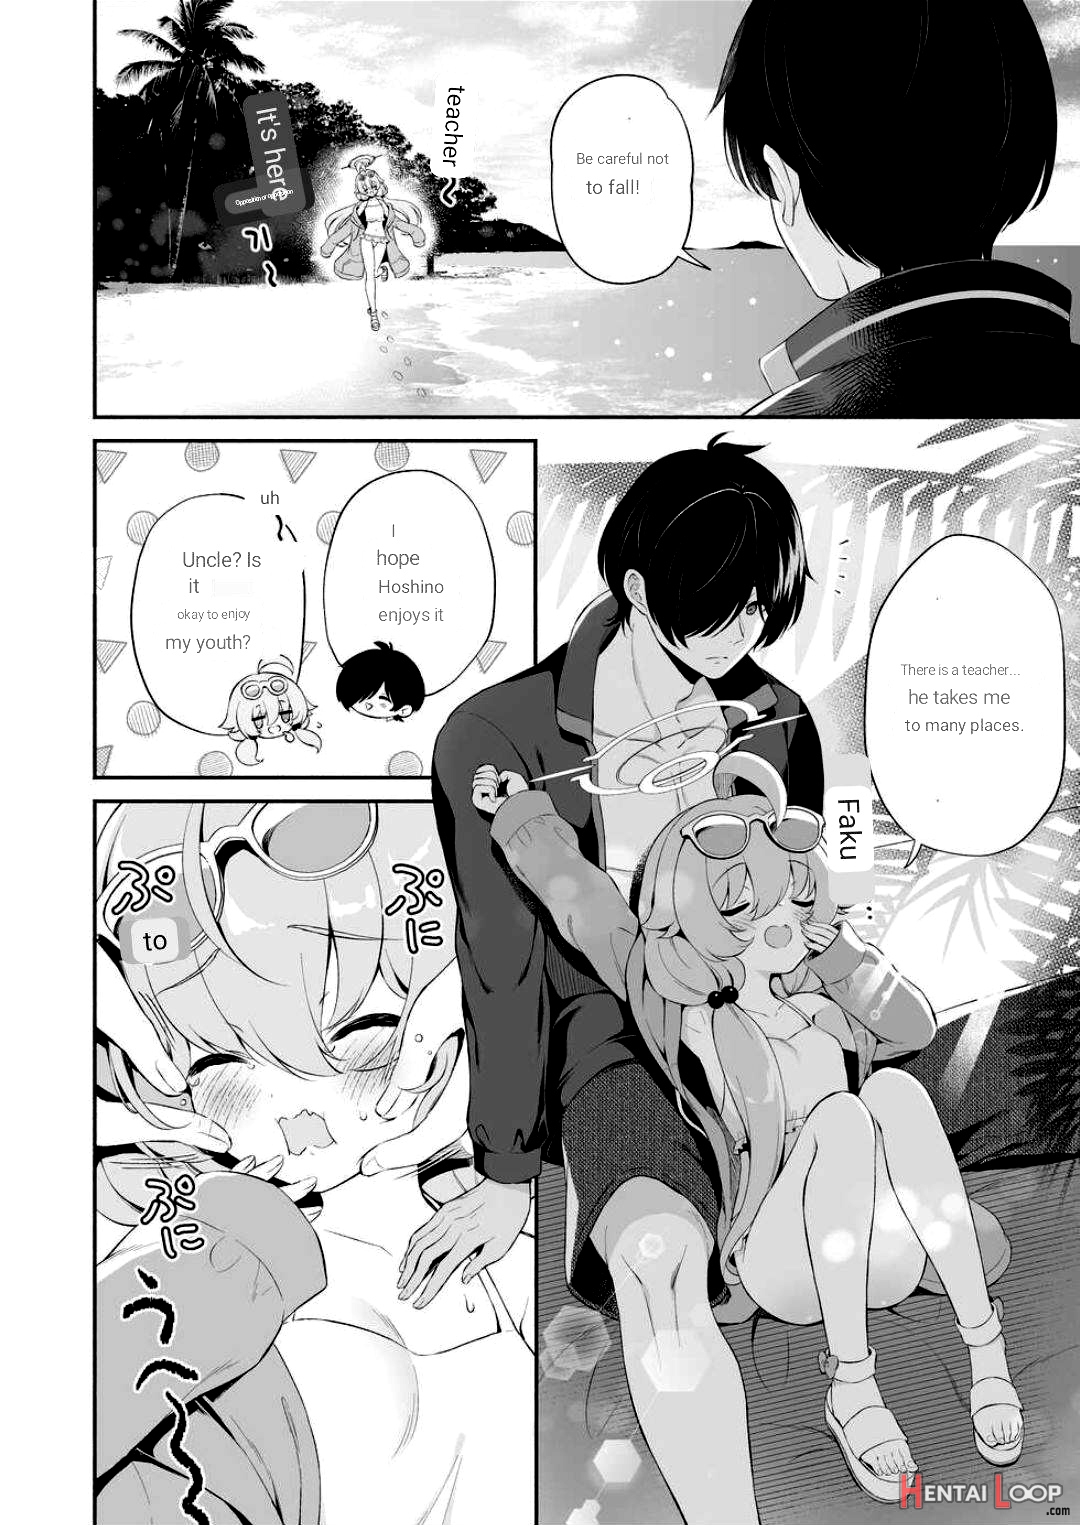 Torokeru Hoshino page 4